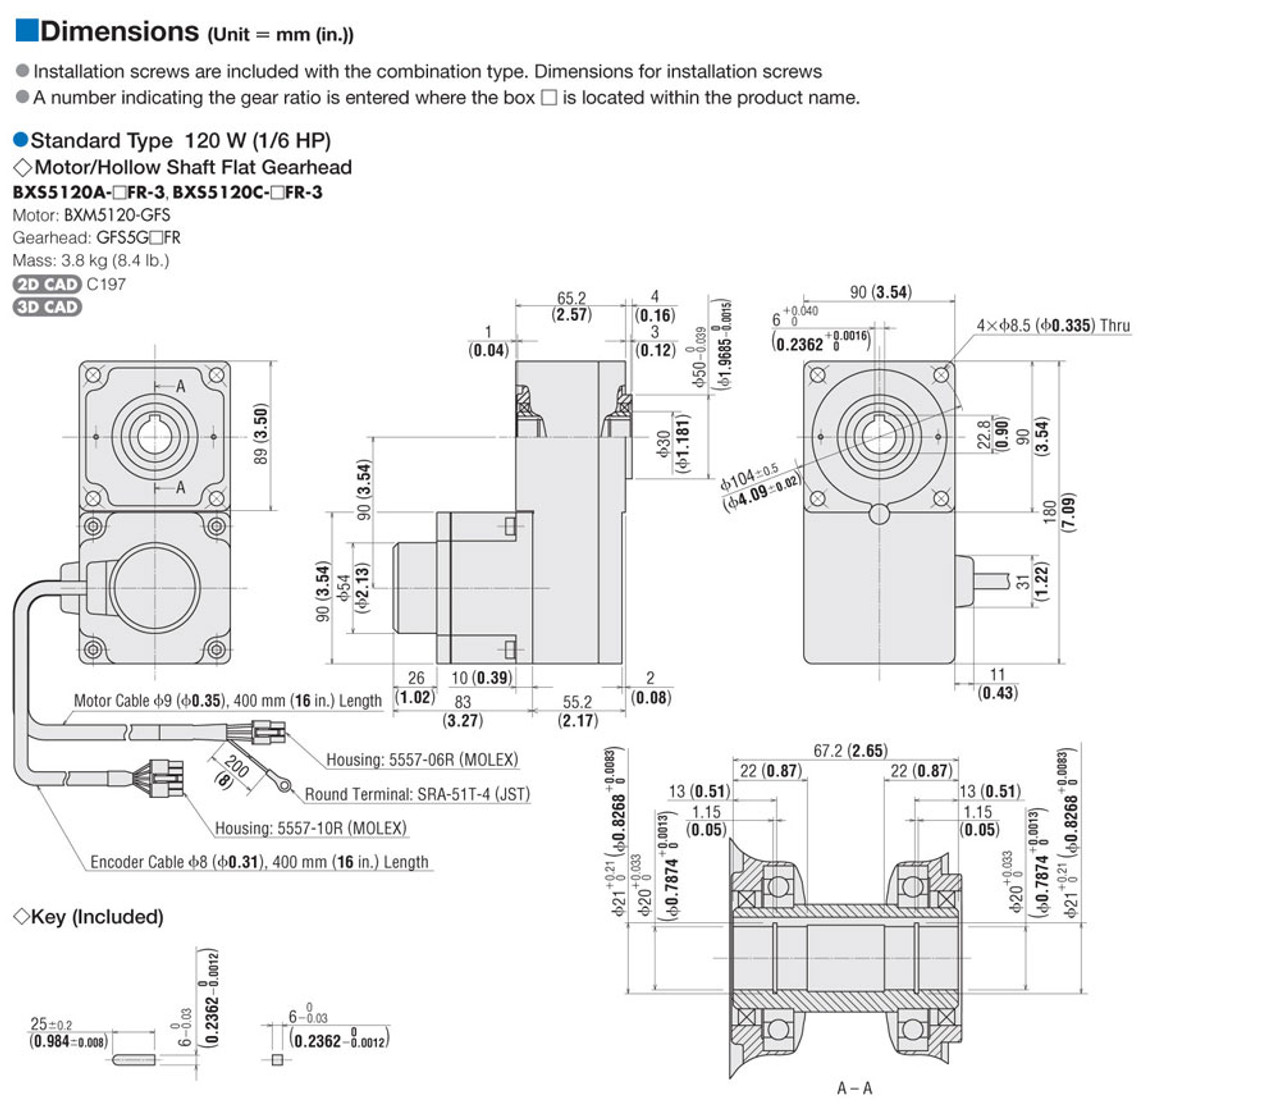 BXS5120C-100FR - Dimensions